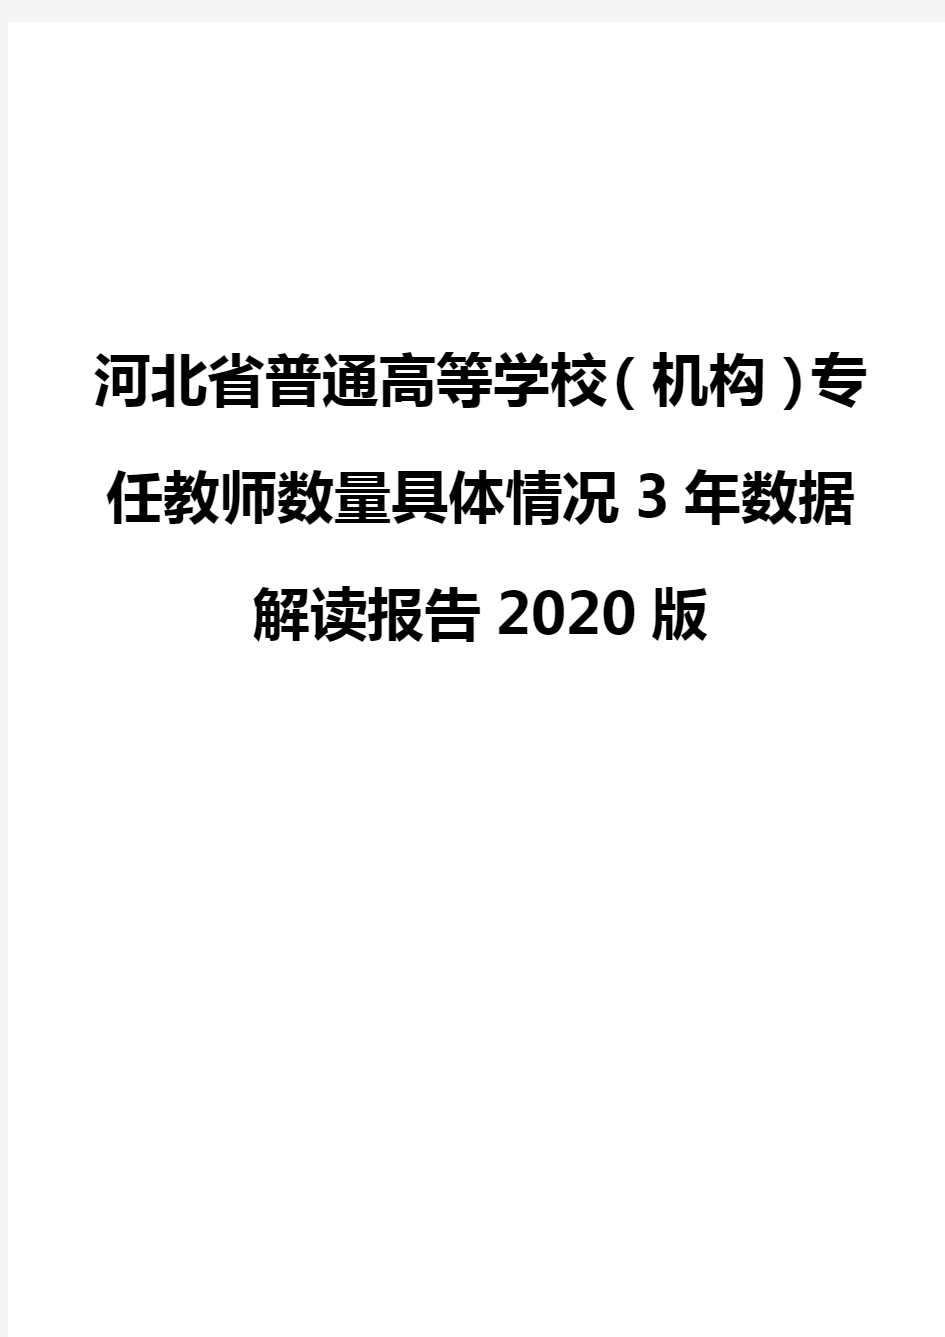 河北省普通高等学校(机构)专任教师数量具体情况3年数据解读报告2020版